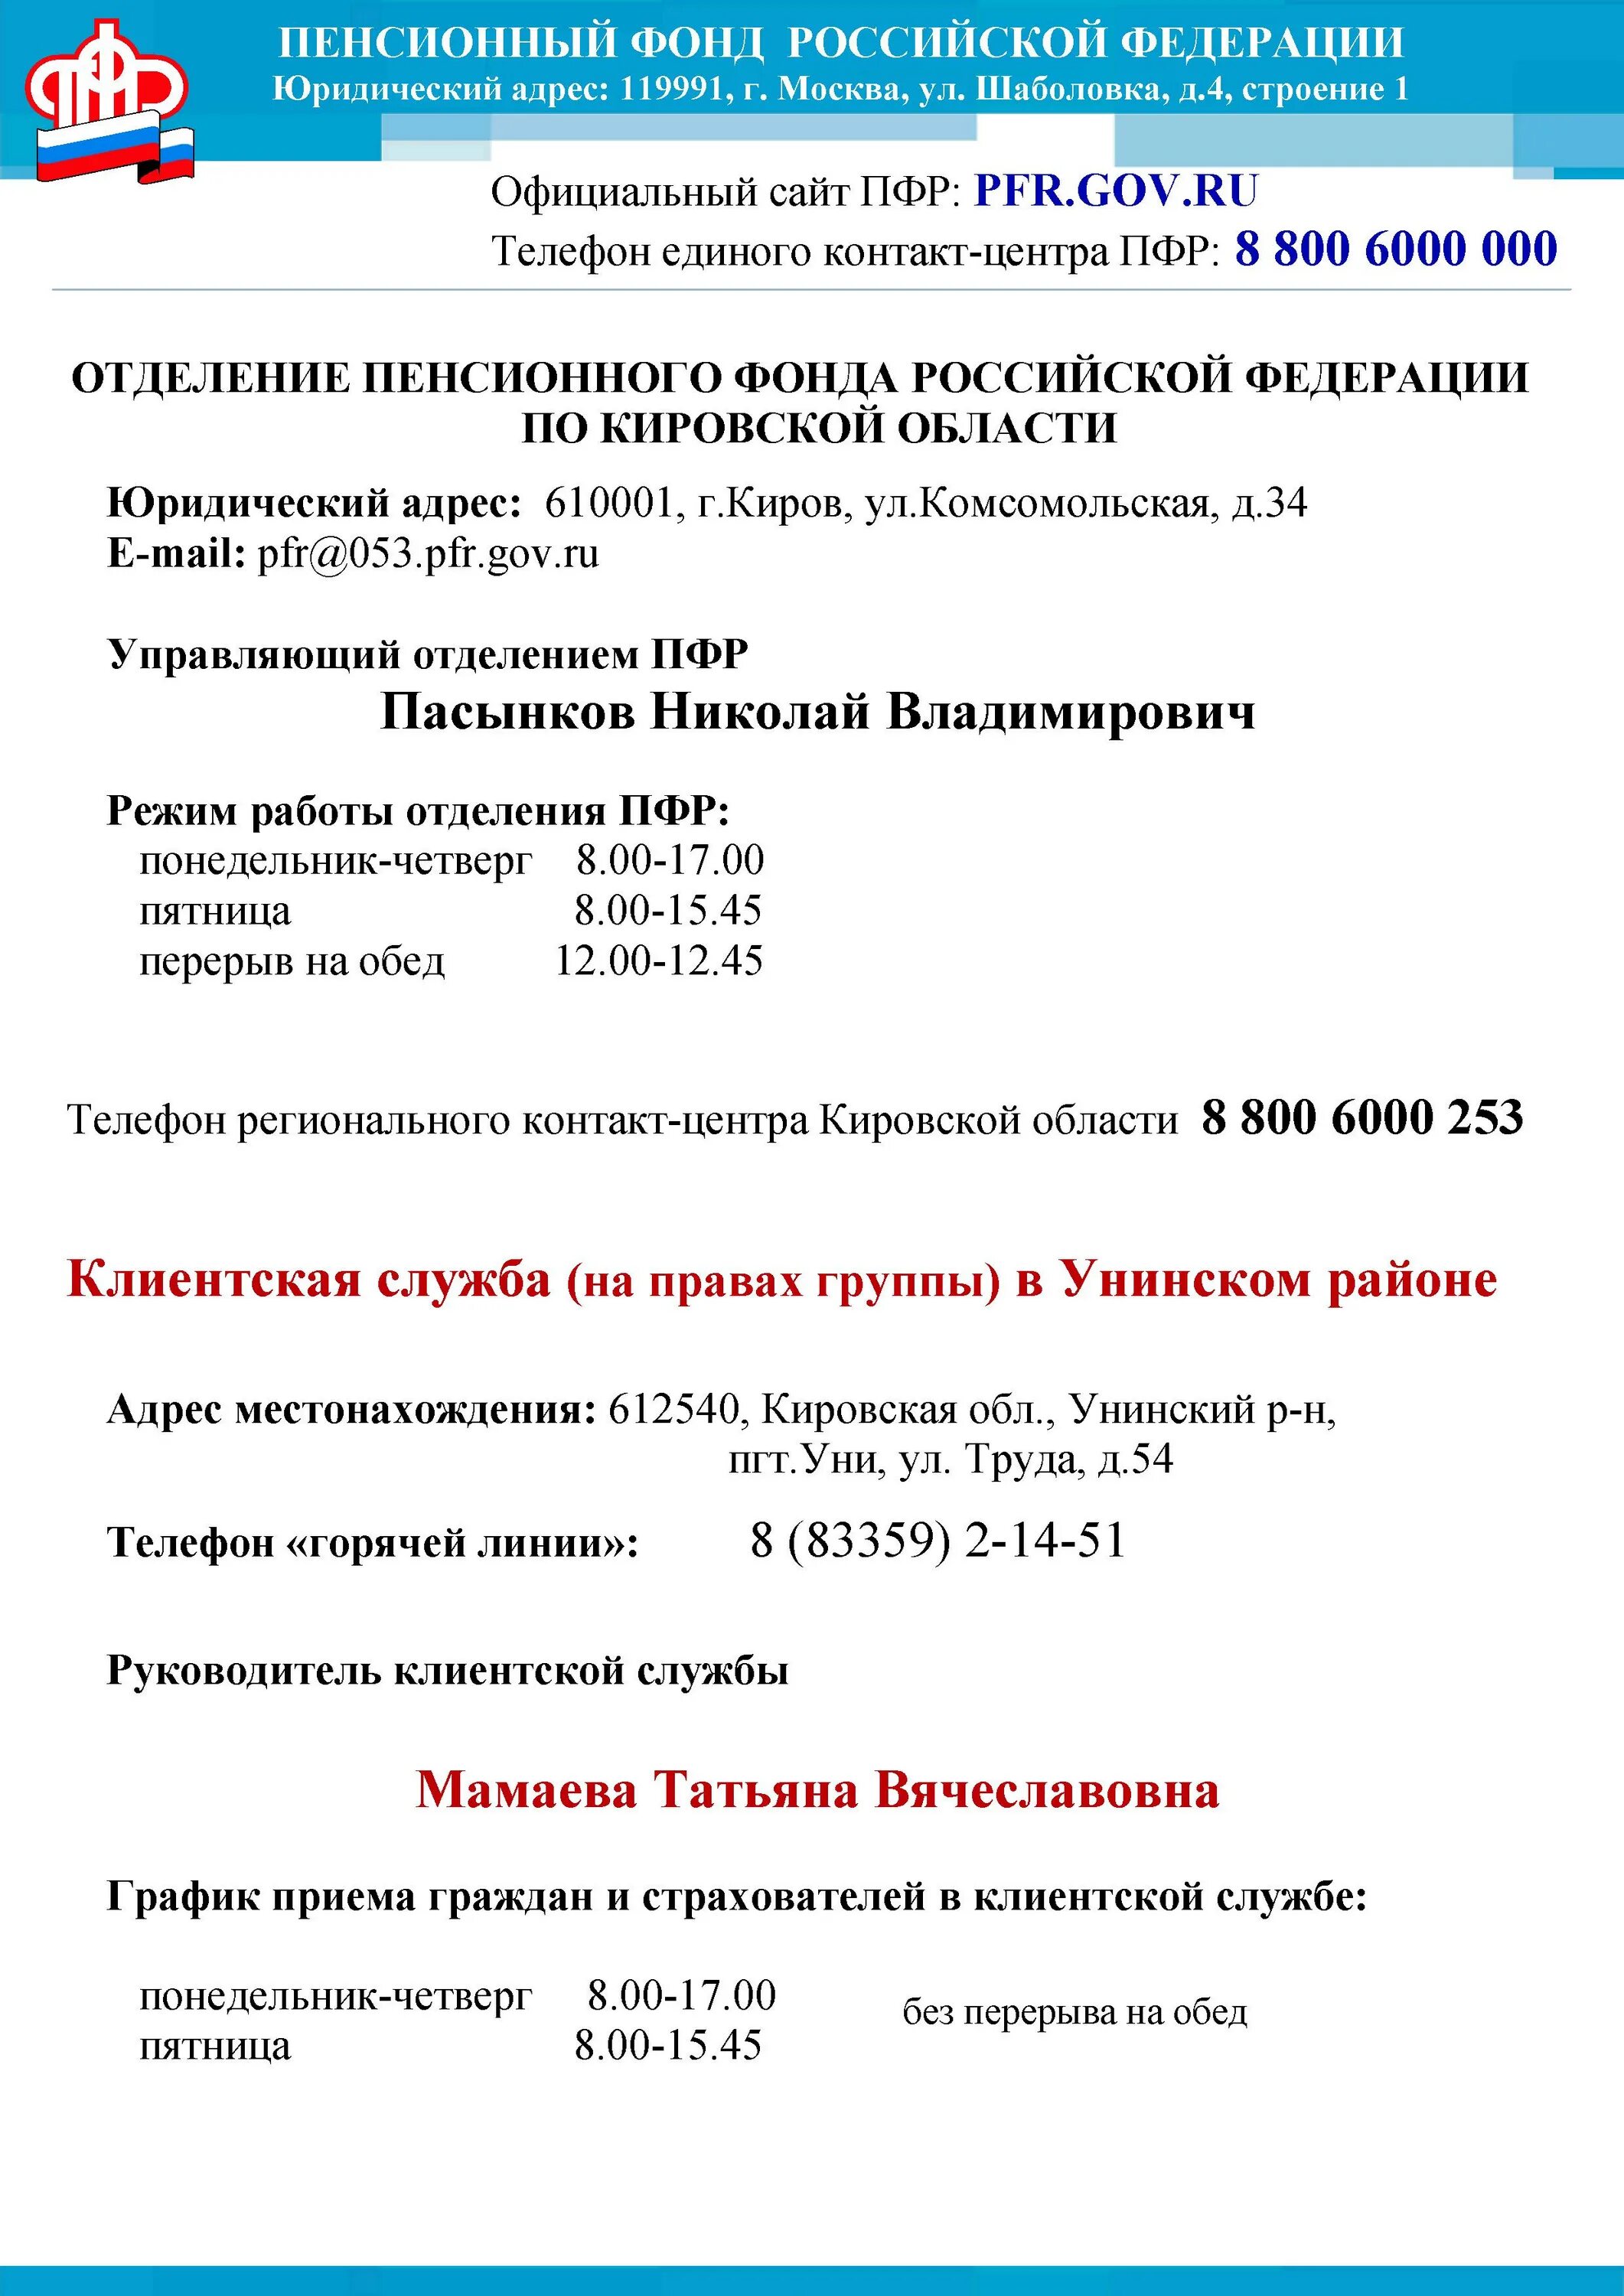 Кировский пенсионный фонд саратов телефон